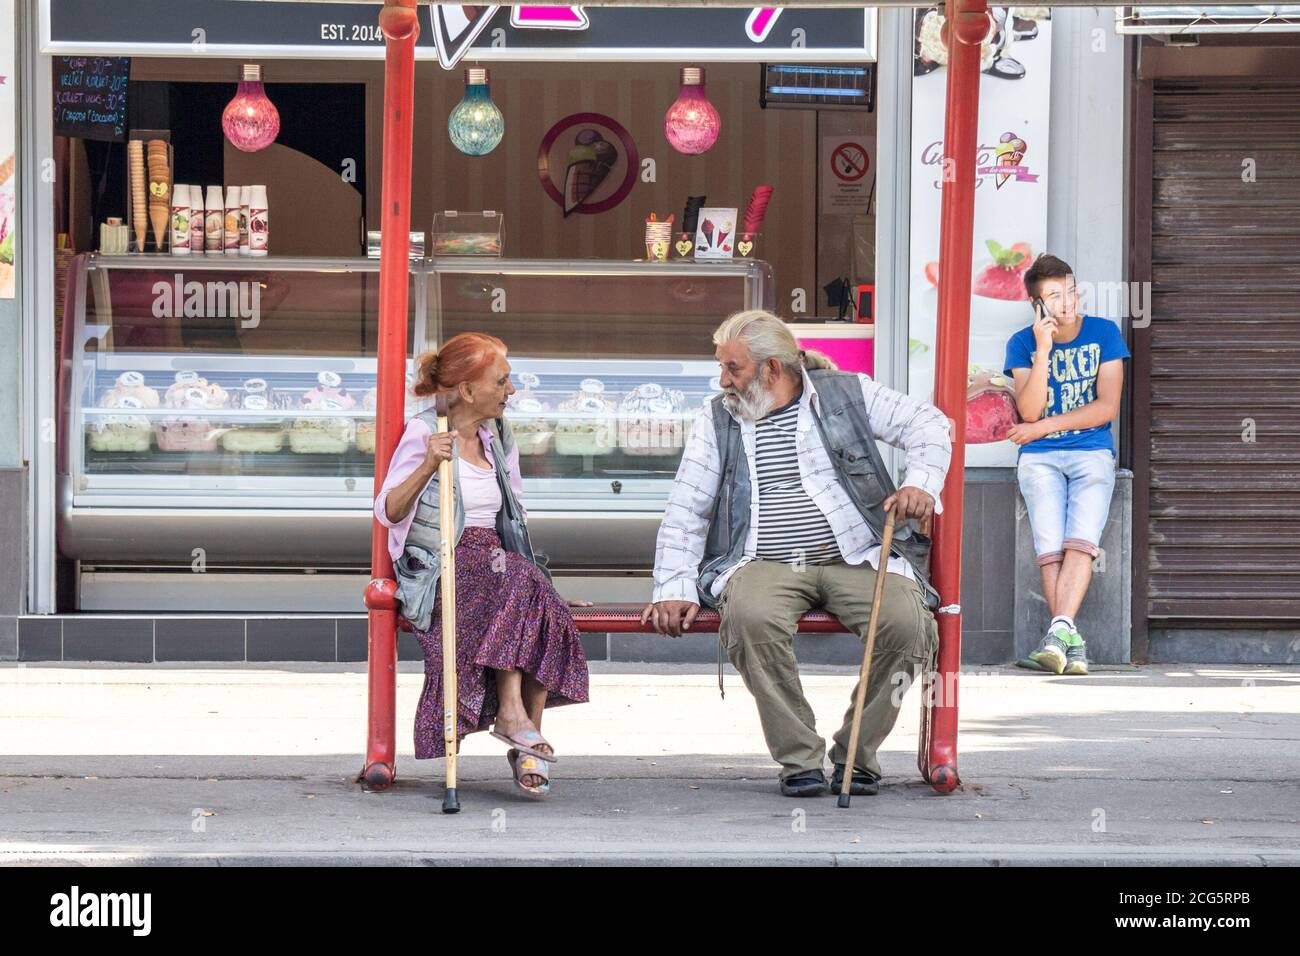 PANCEVO, SERBIA - 13 GIUGNO 2015: Due persone anziane, un uomo anziano e una donna, appartenenti alla comunità rom discutono in attesa di un autobus nel centesimo Foto Stock